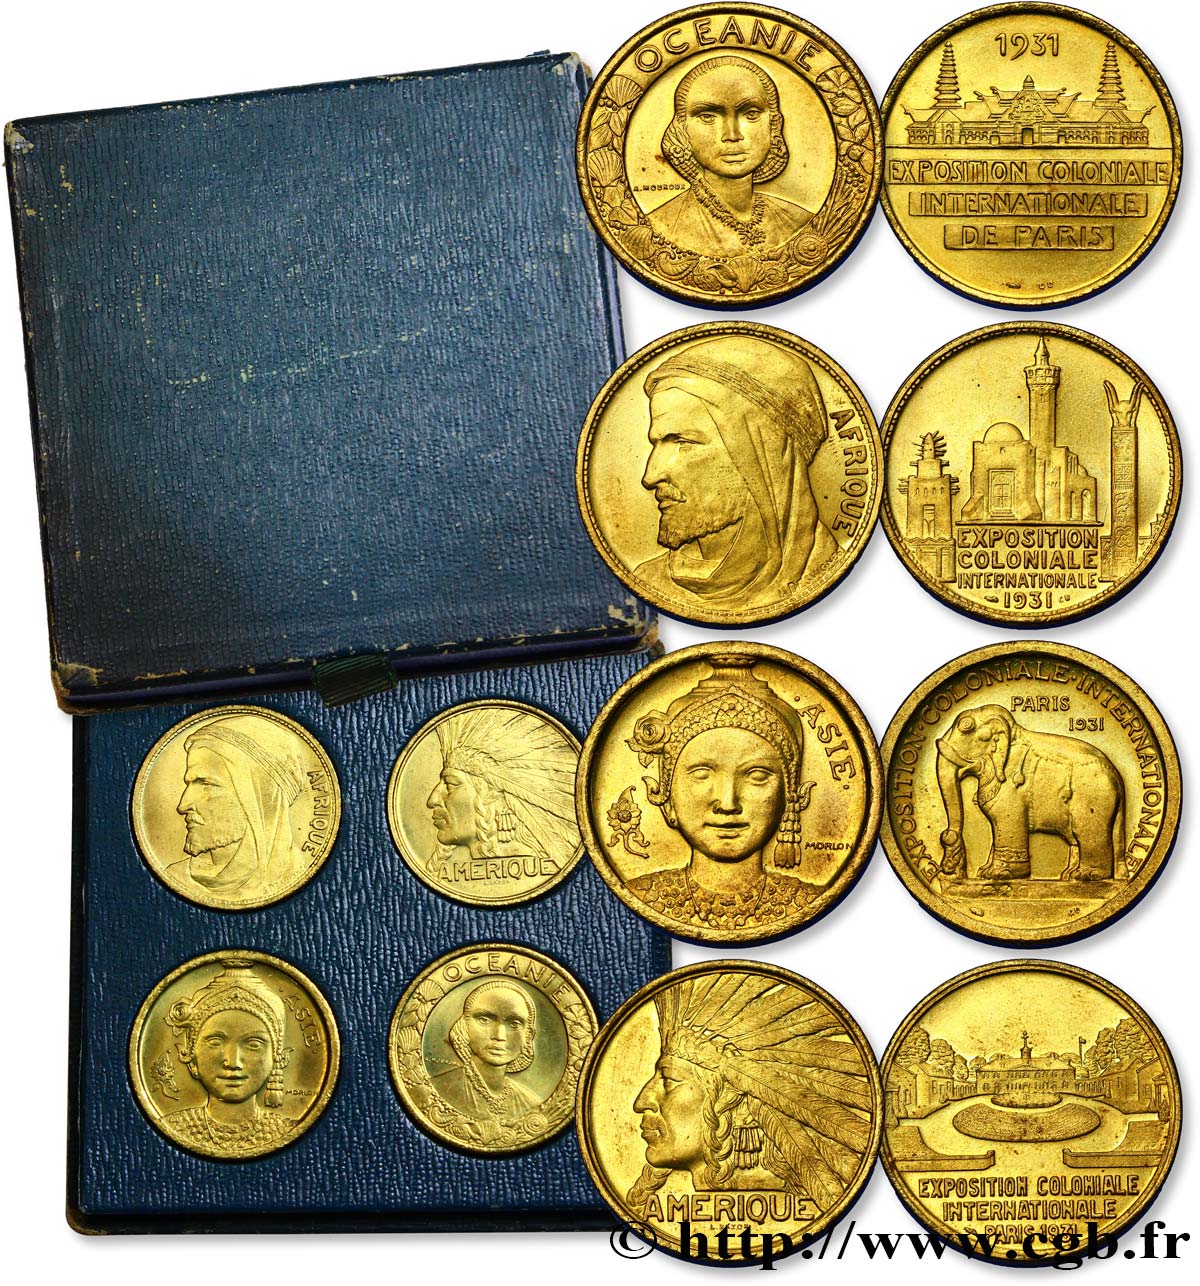 FRENCH COLONIES Coffret 4 médailles Exposition Coloniale Internationale 1931 Paris MS 